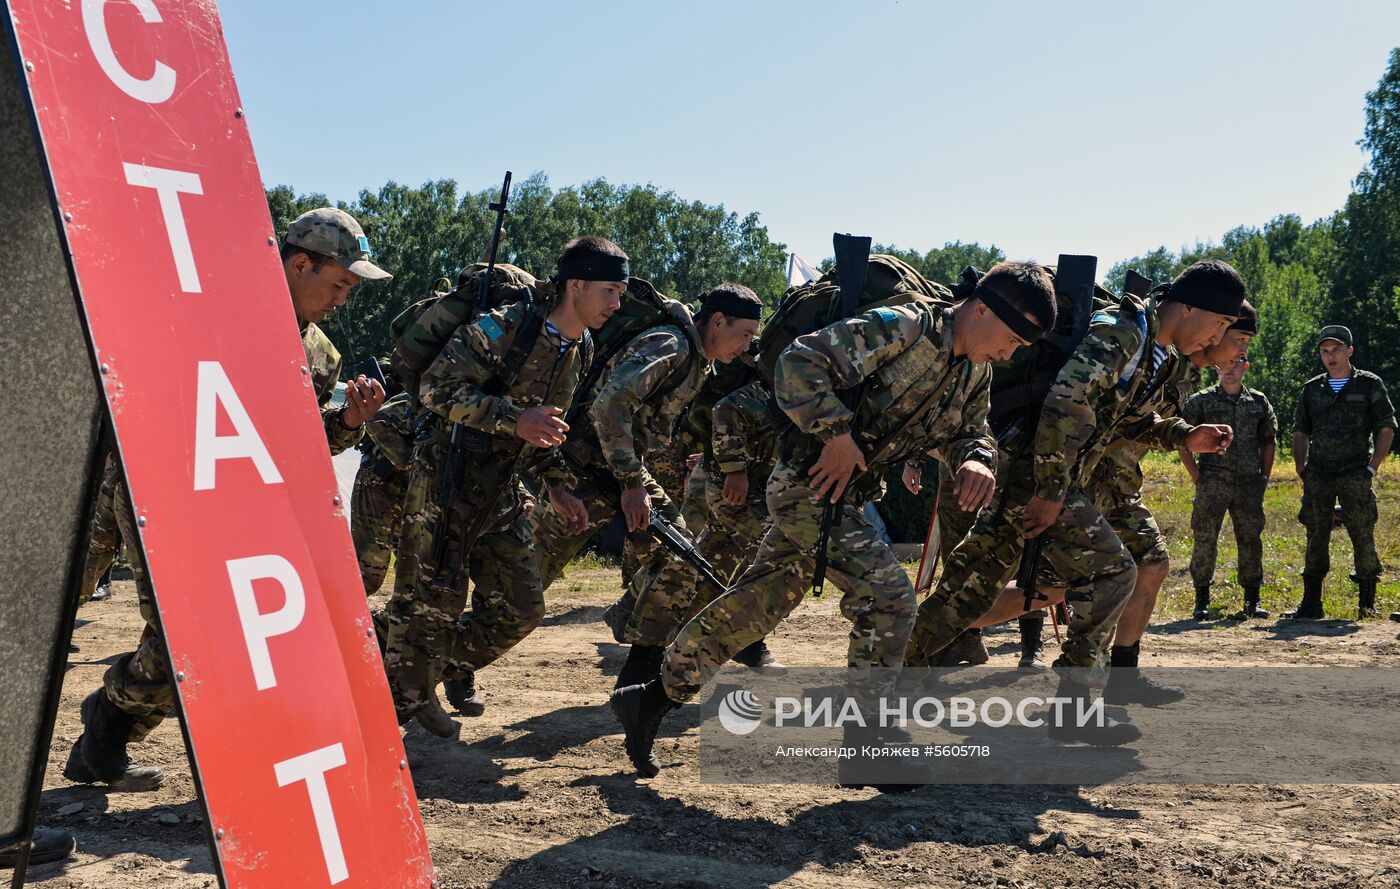 Конкурс "Отличники войсковой разведки" в Новосибирской области